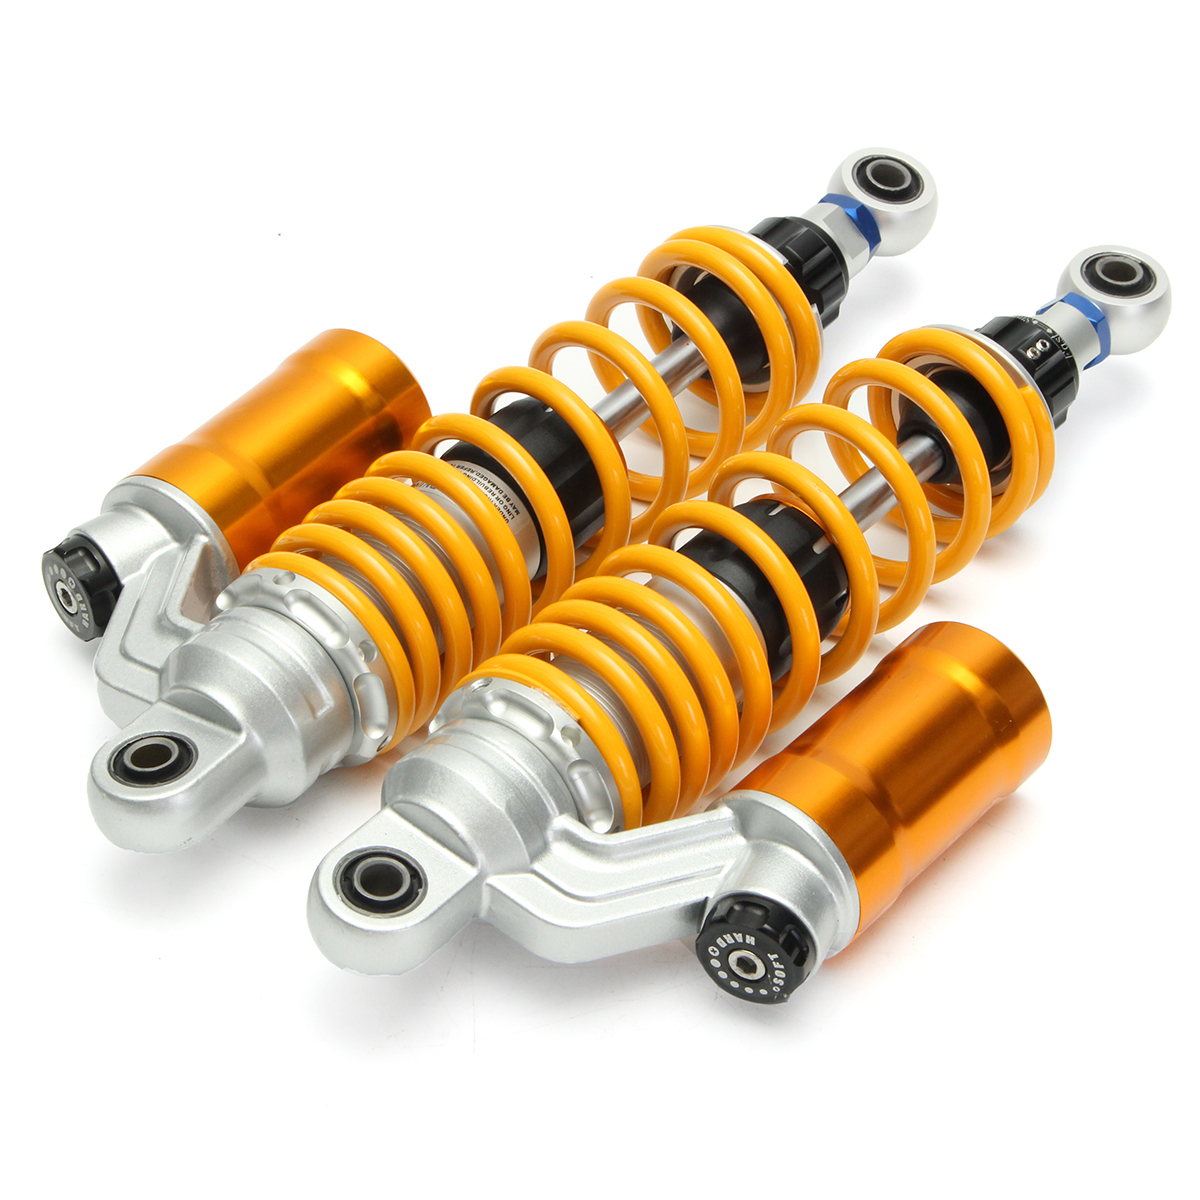 325mm-Adjustable-Universal-Motorcycle-Shocks-Struts-Vibration-Absorber-Dampers-1157720